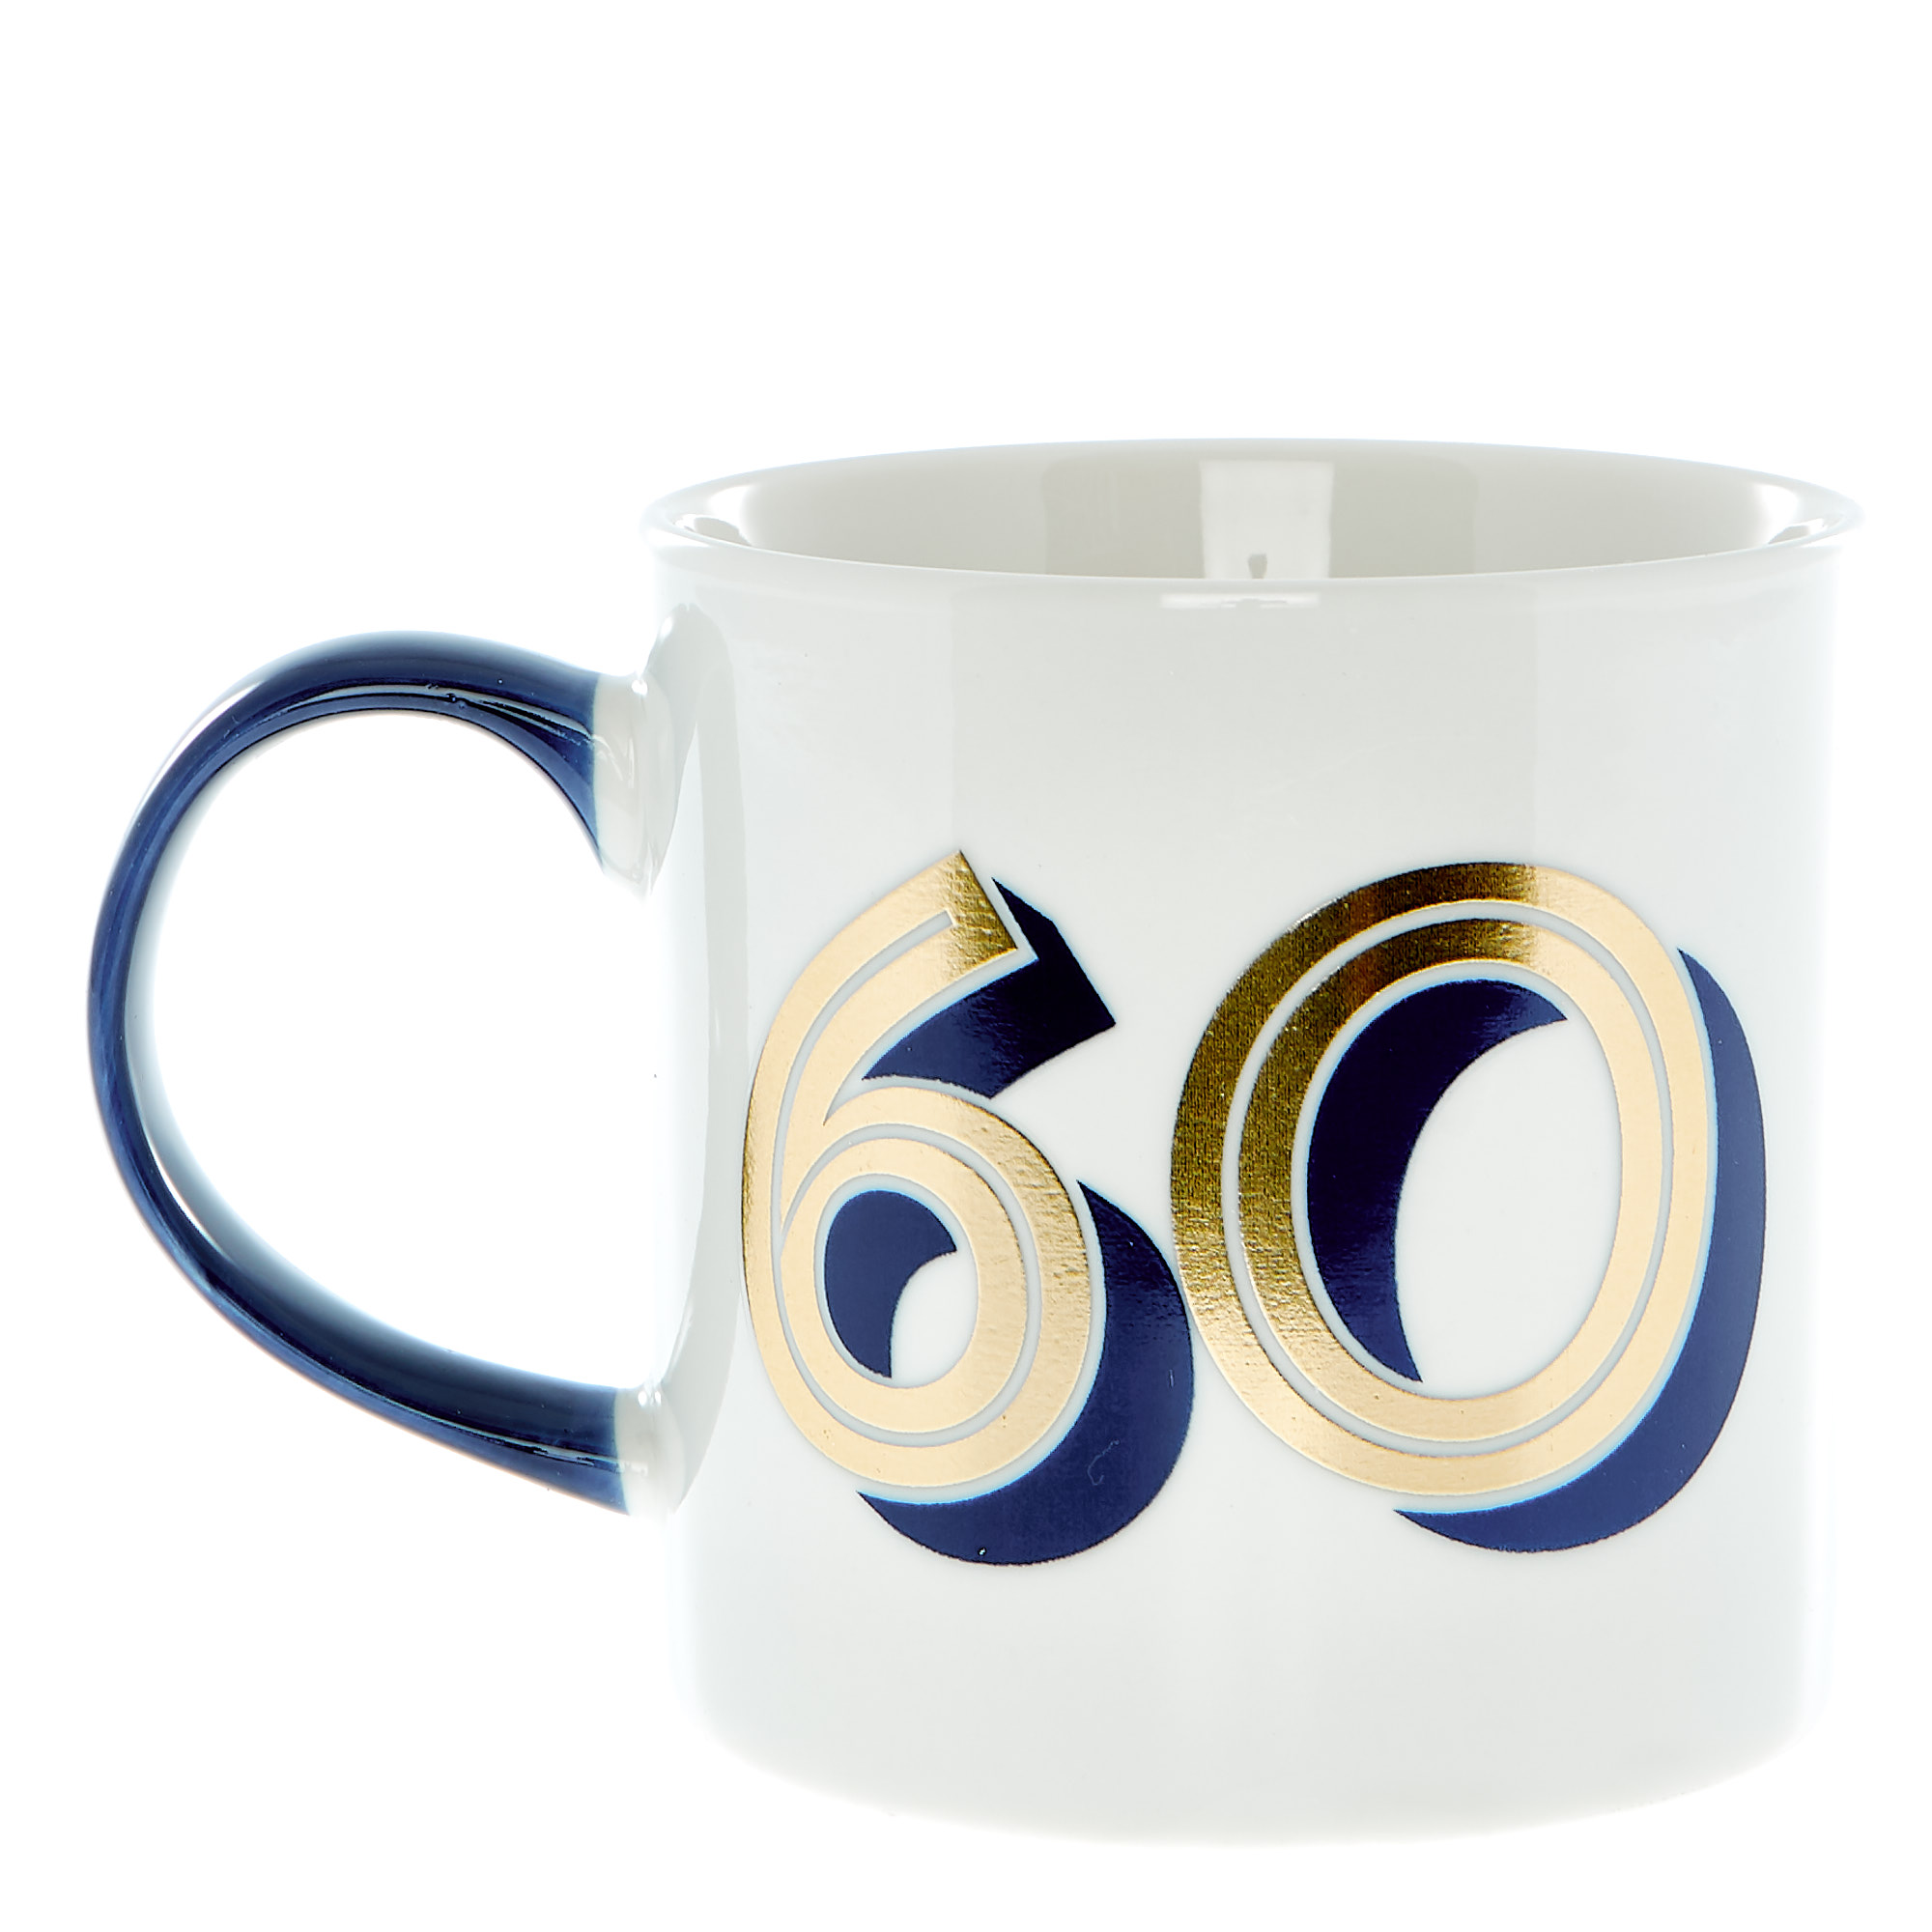 60th Birthday Mug In A Box - Blue & Gold 